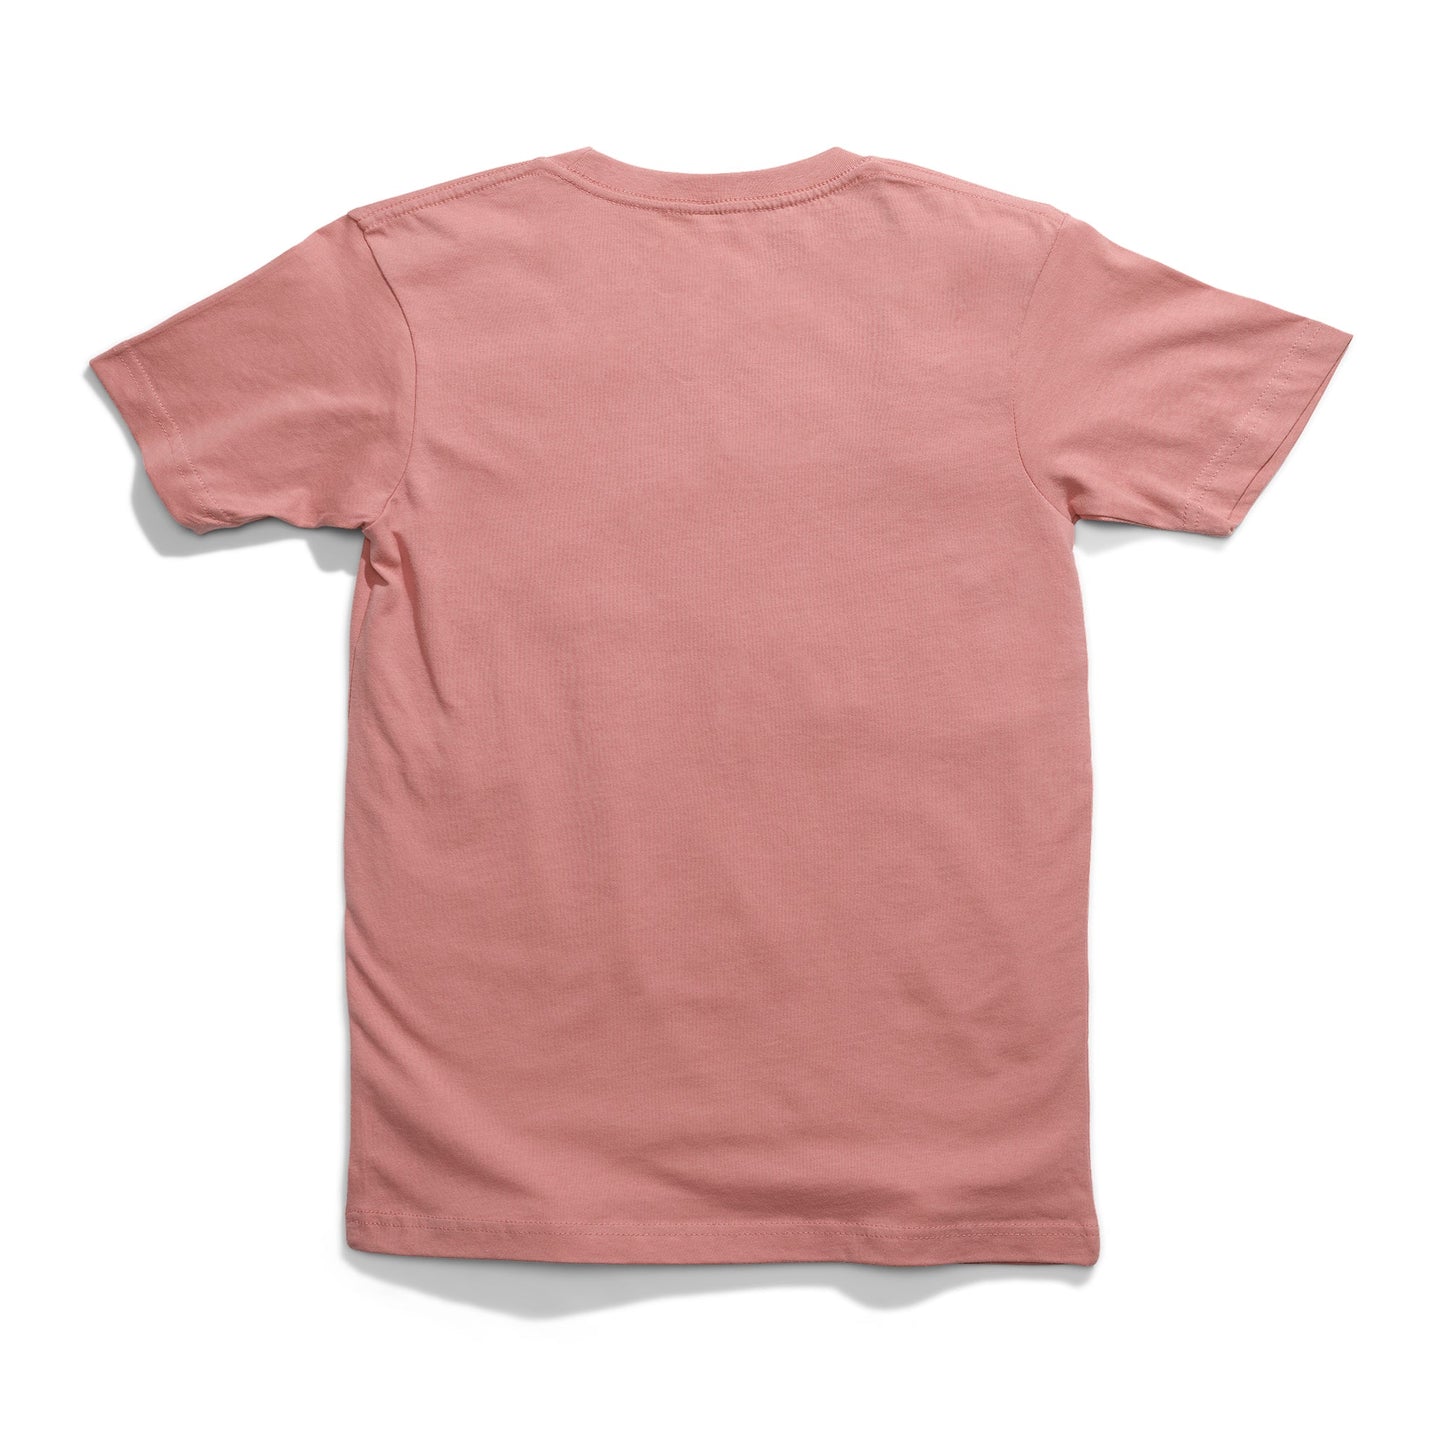 T-shirt rose pastel Escondido de Stance